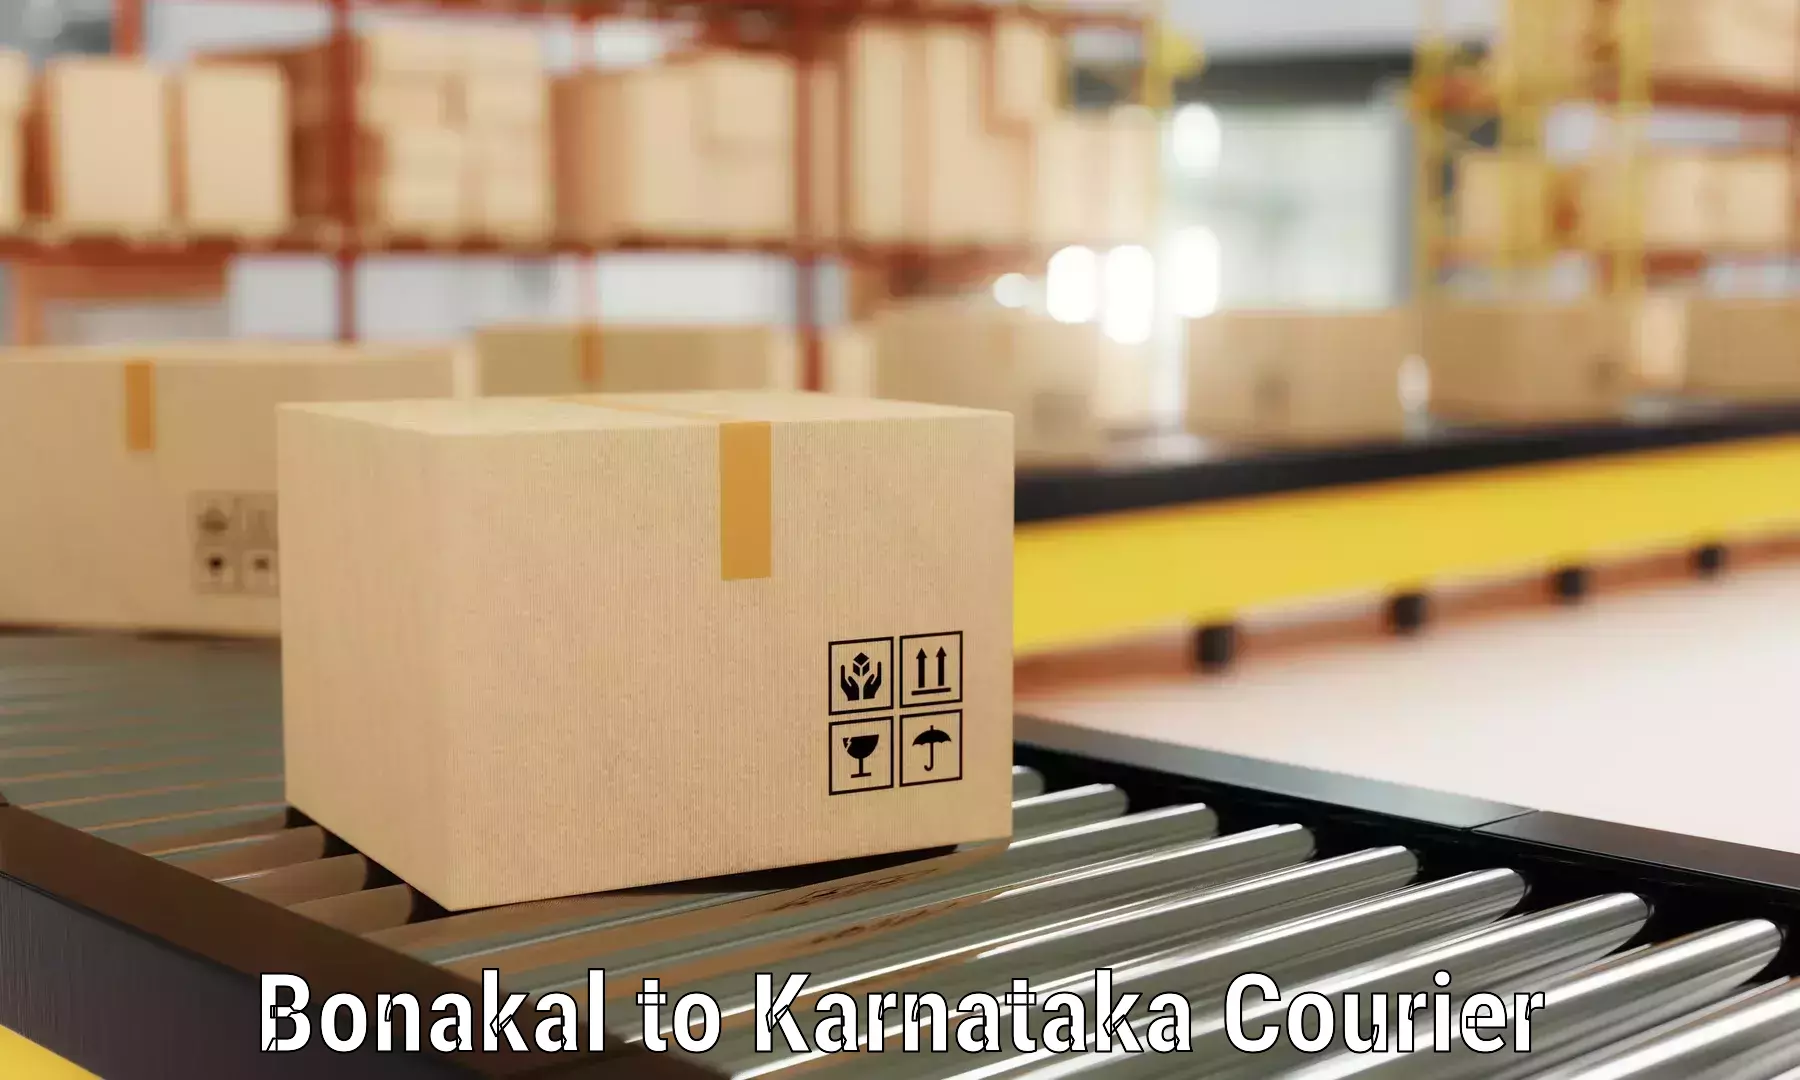 Furniture delivery service Bonakal to Alnavar